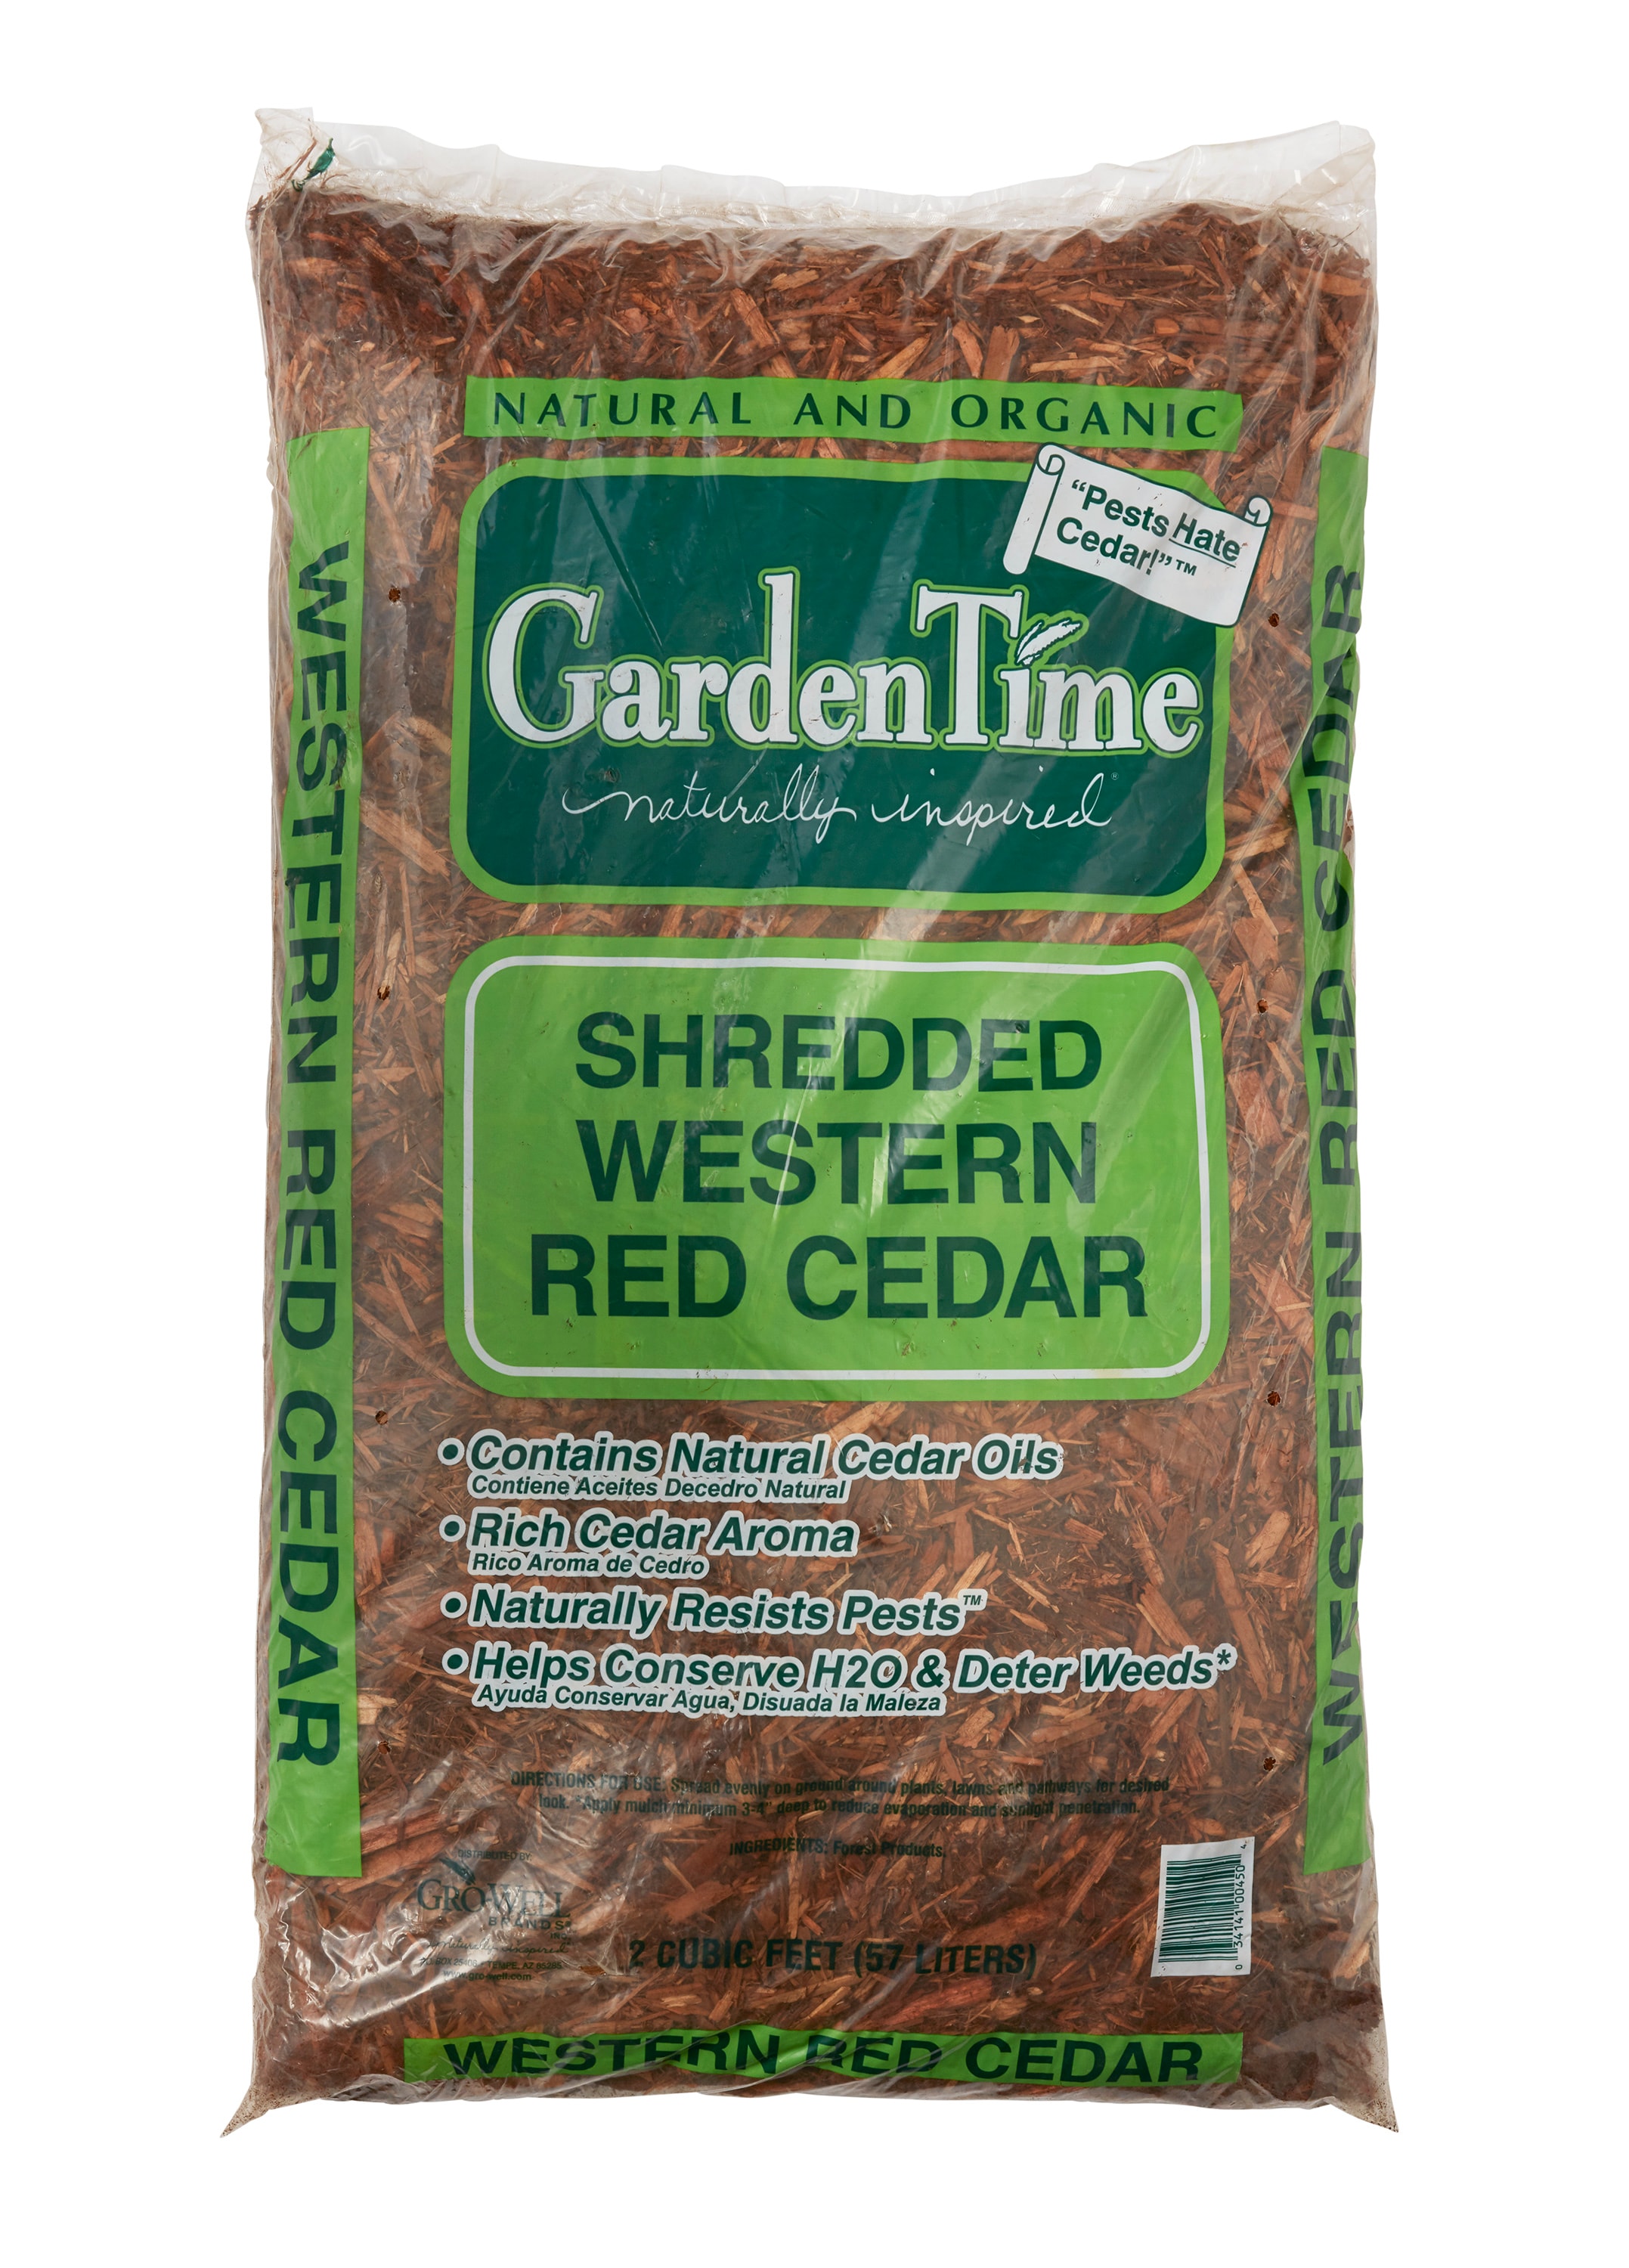 Western red cedar Bagged Mulch at